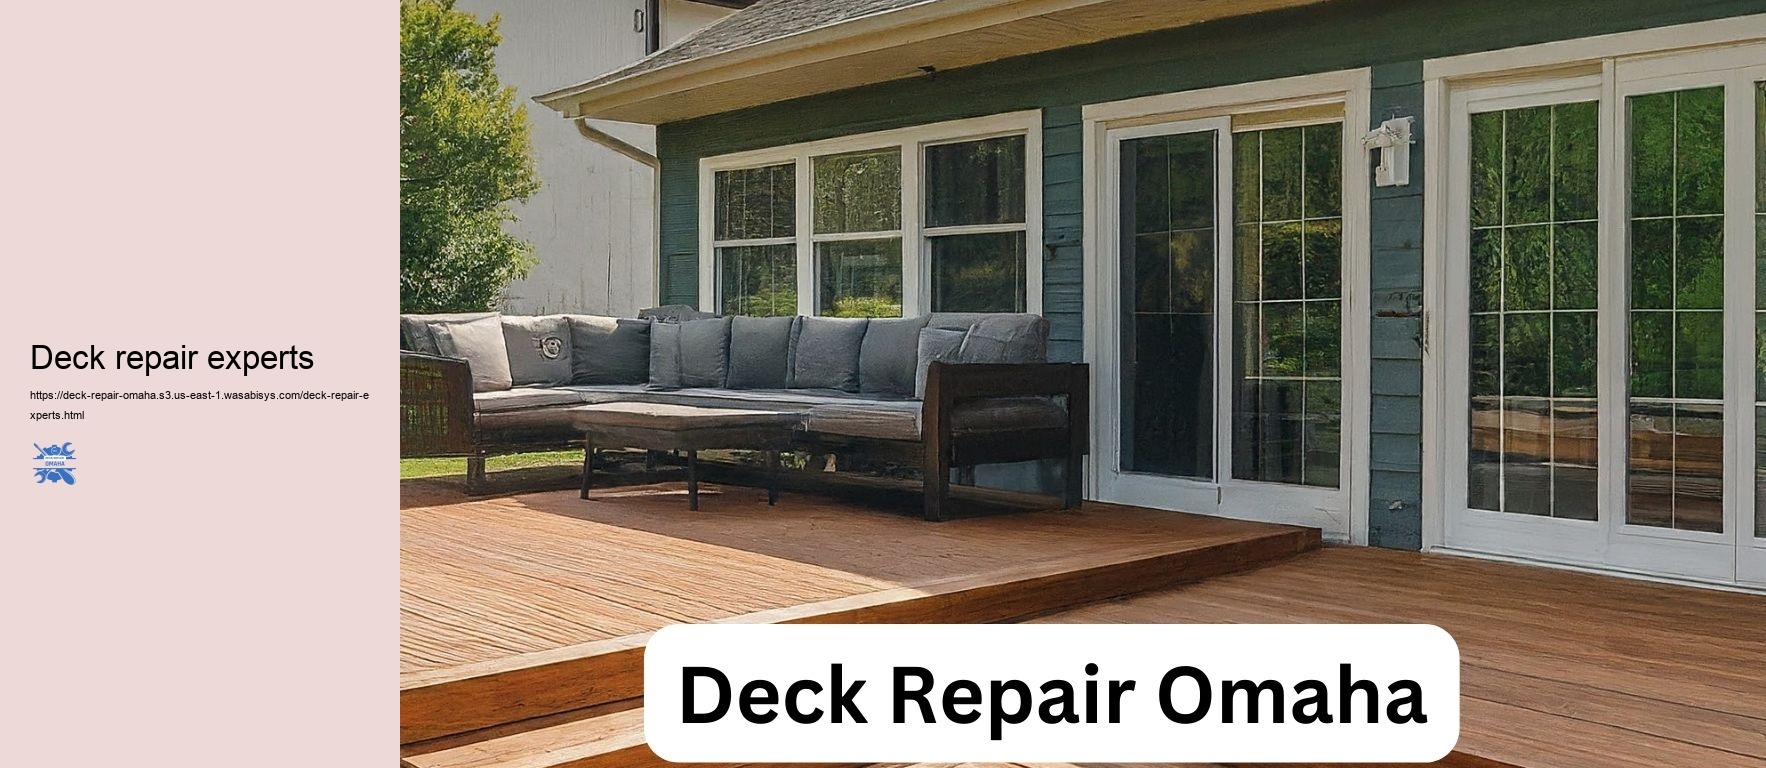 Deck repair experts